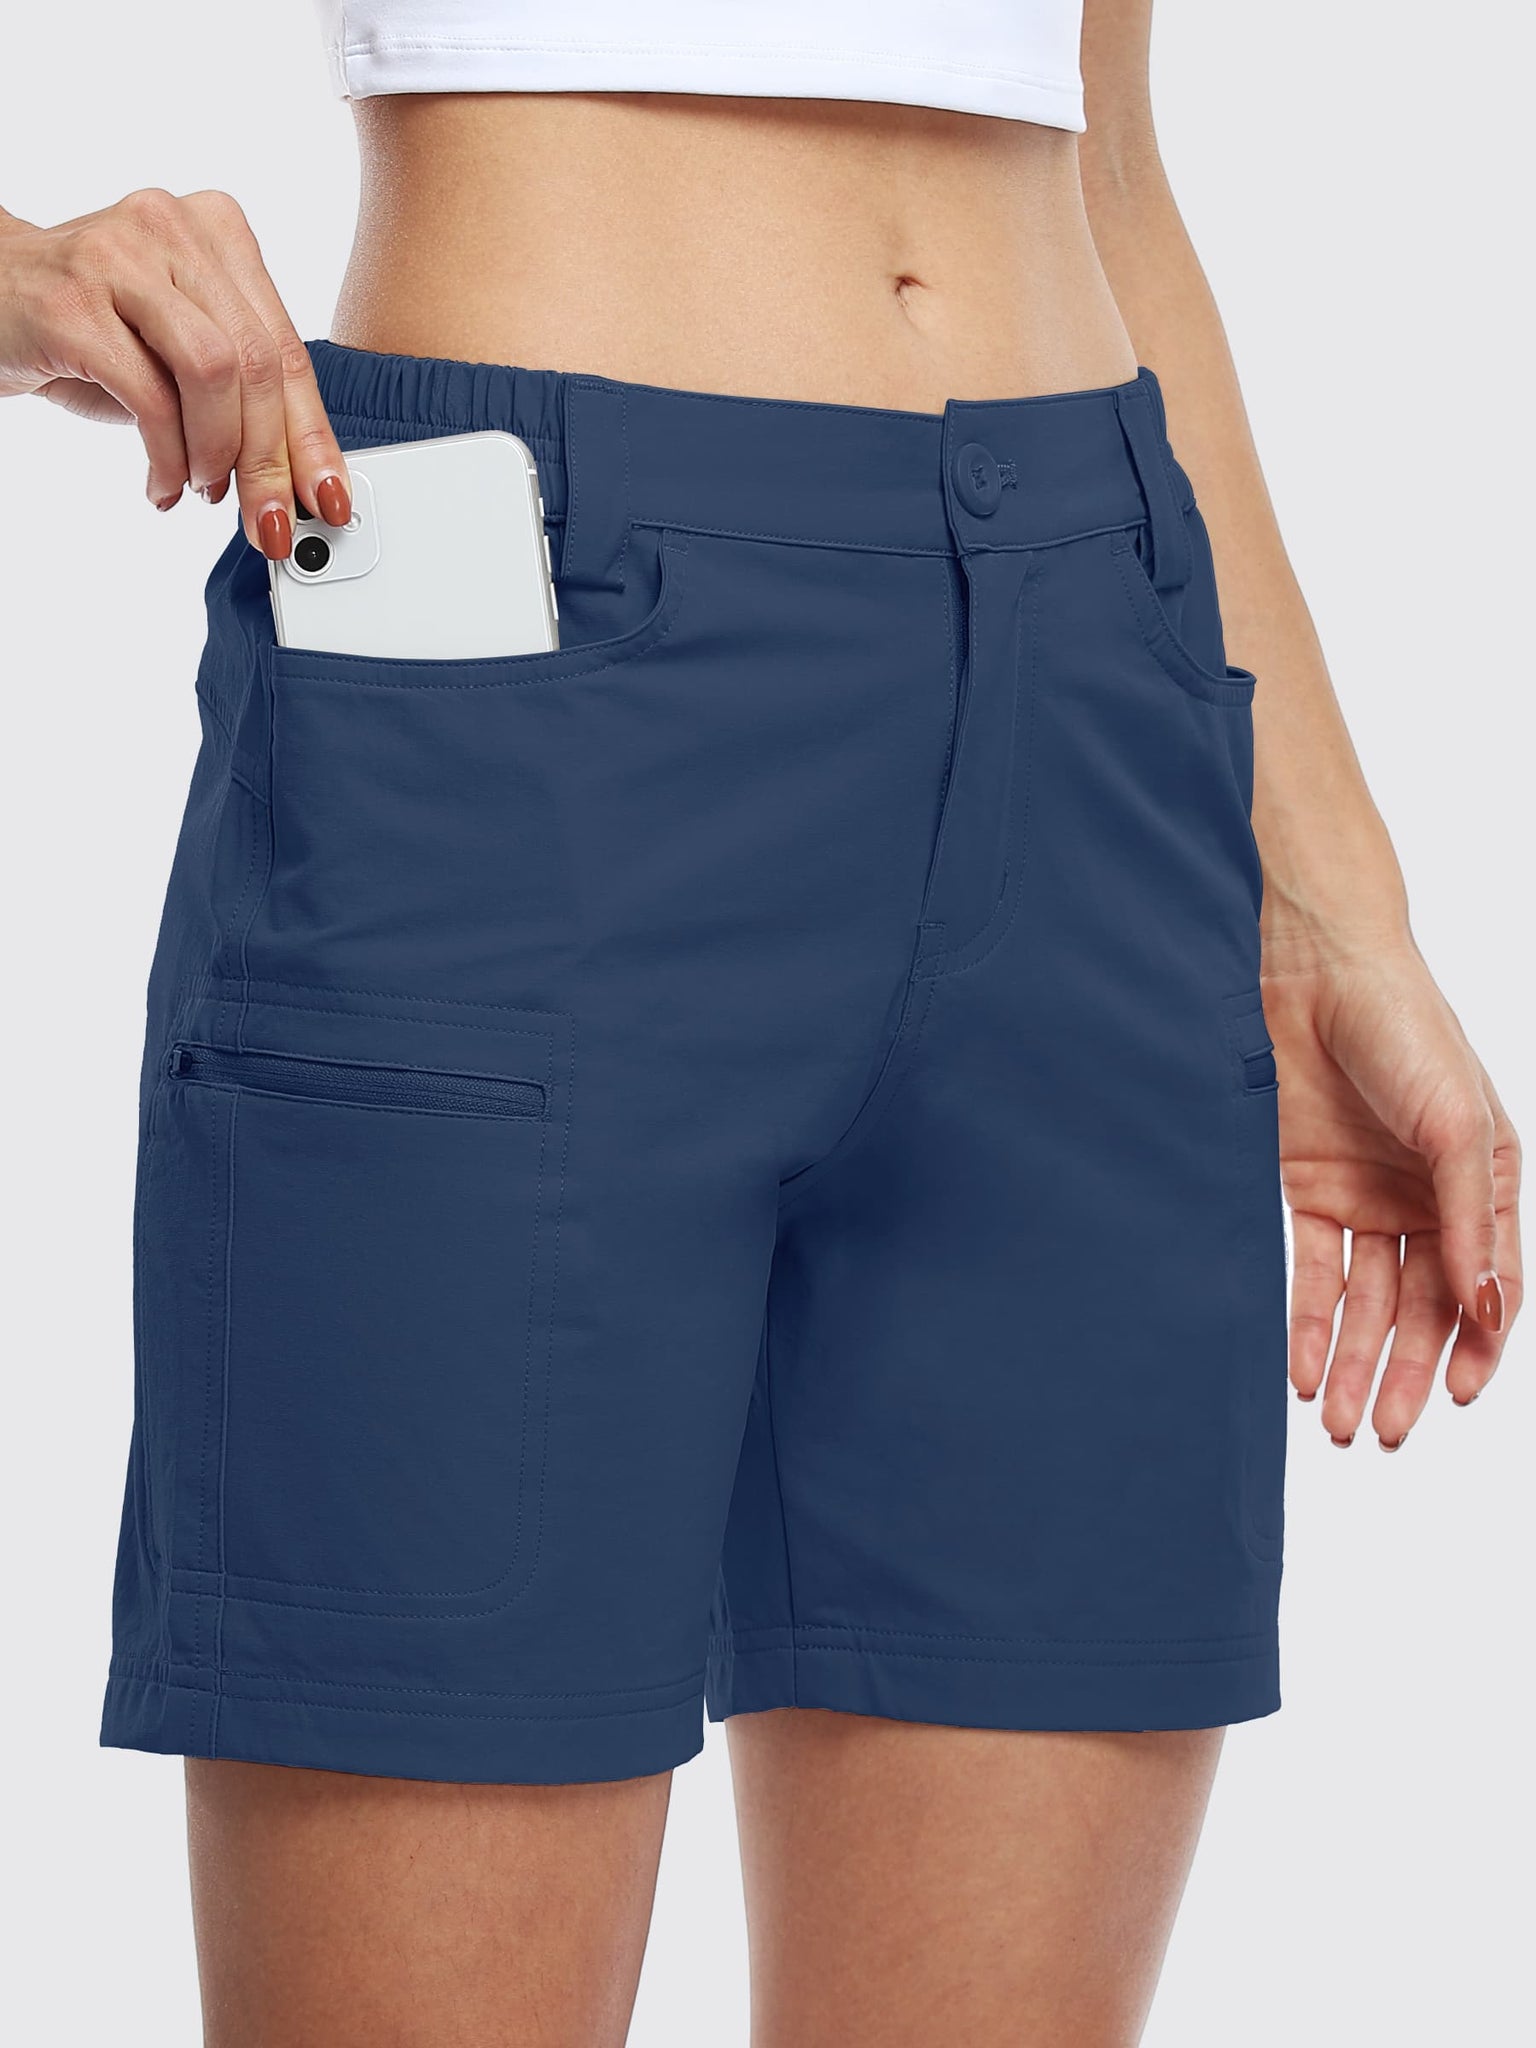 Willit Women's Outdoor Cargo Shorts 6 Inseam_Navy_model2